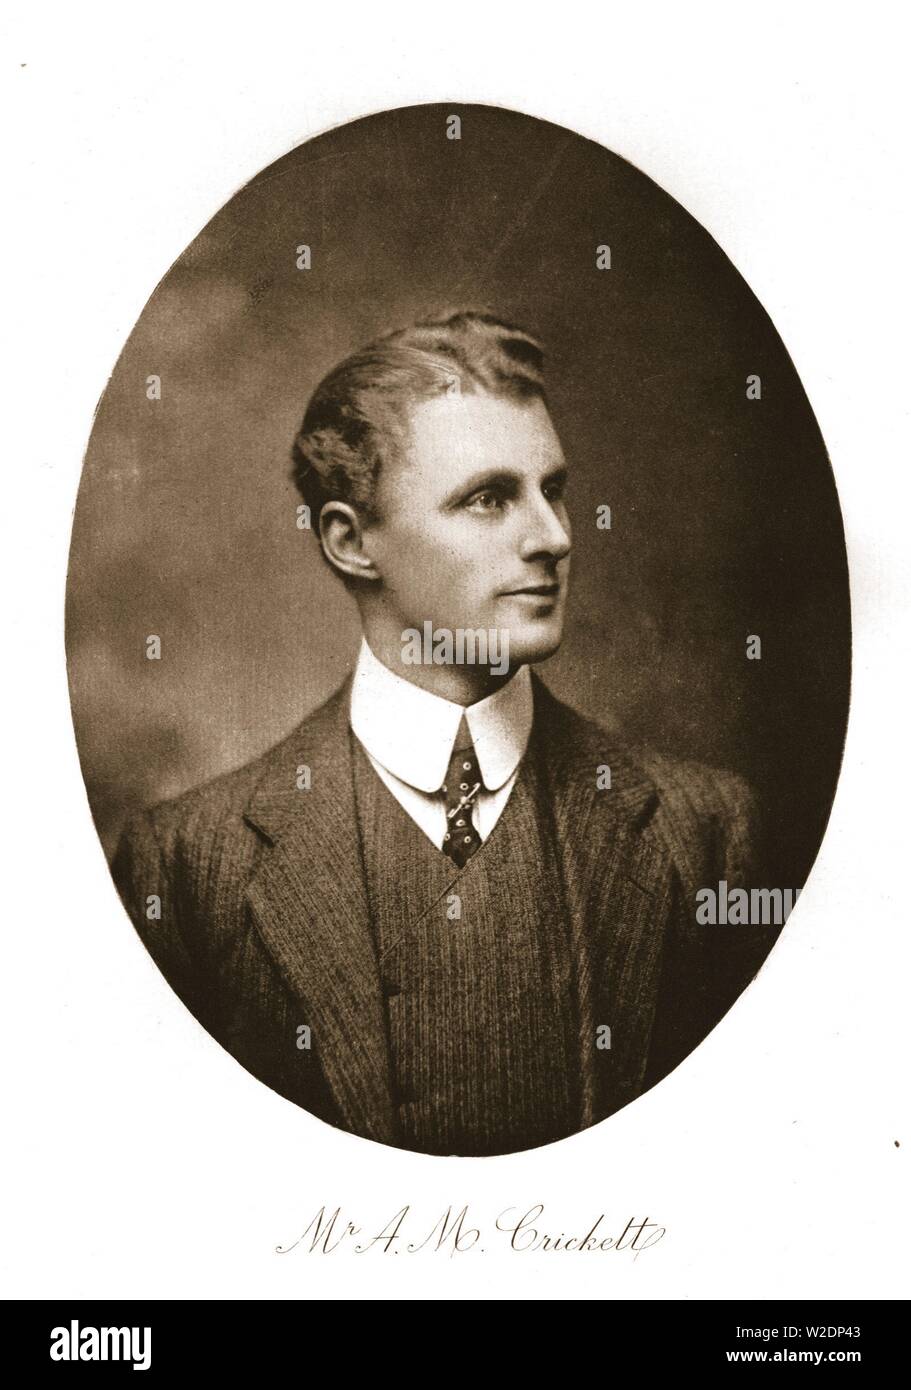 Mr A M Crickett, 1911.  Creator: Unknown. Stock Photo